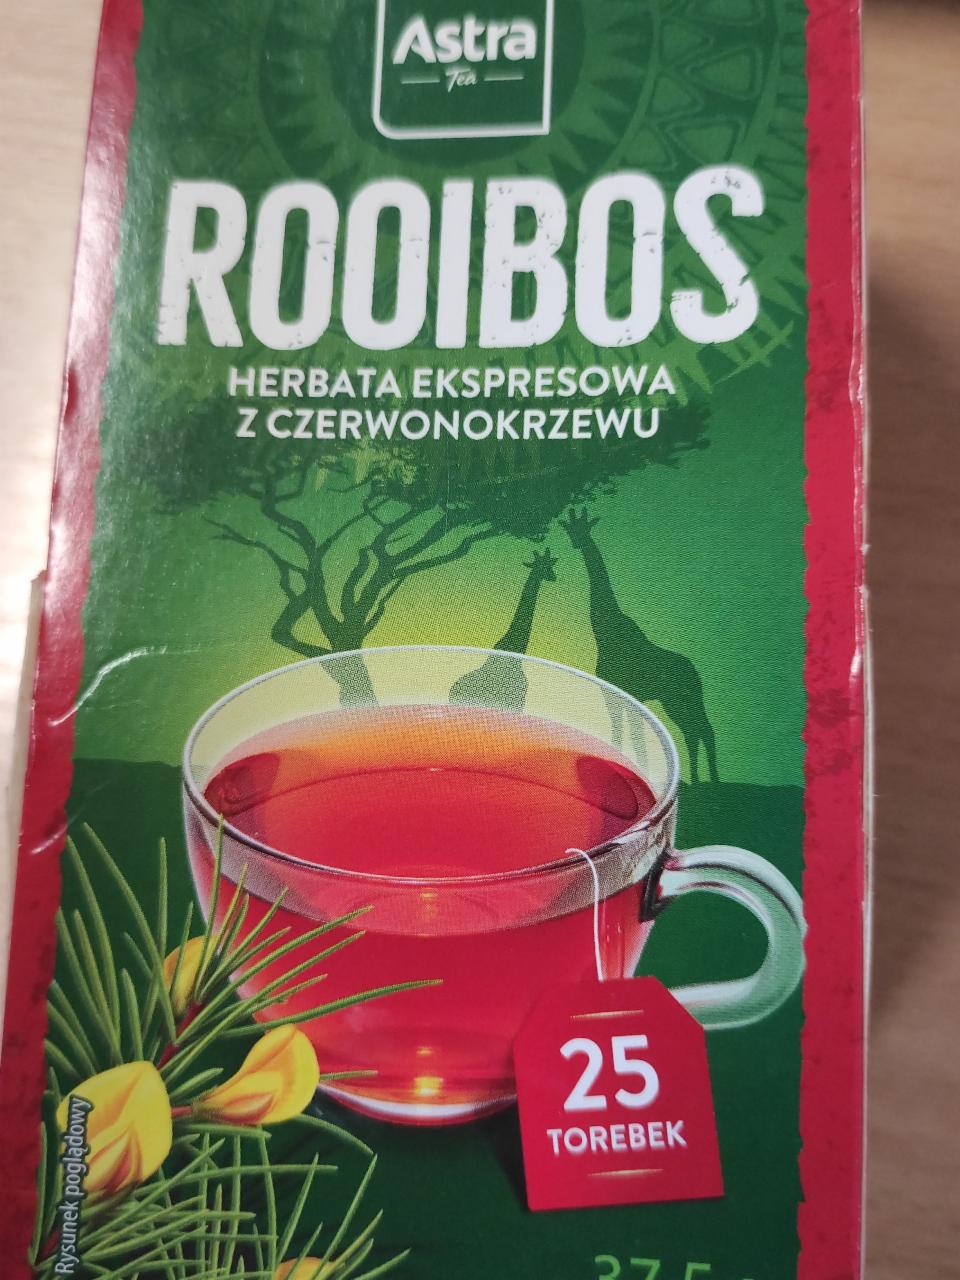 Zdjęcia - rooibos herbata ekspresowa z czerwonokrzewu Astra